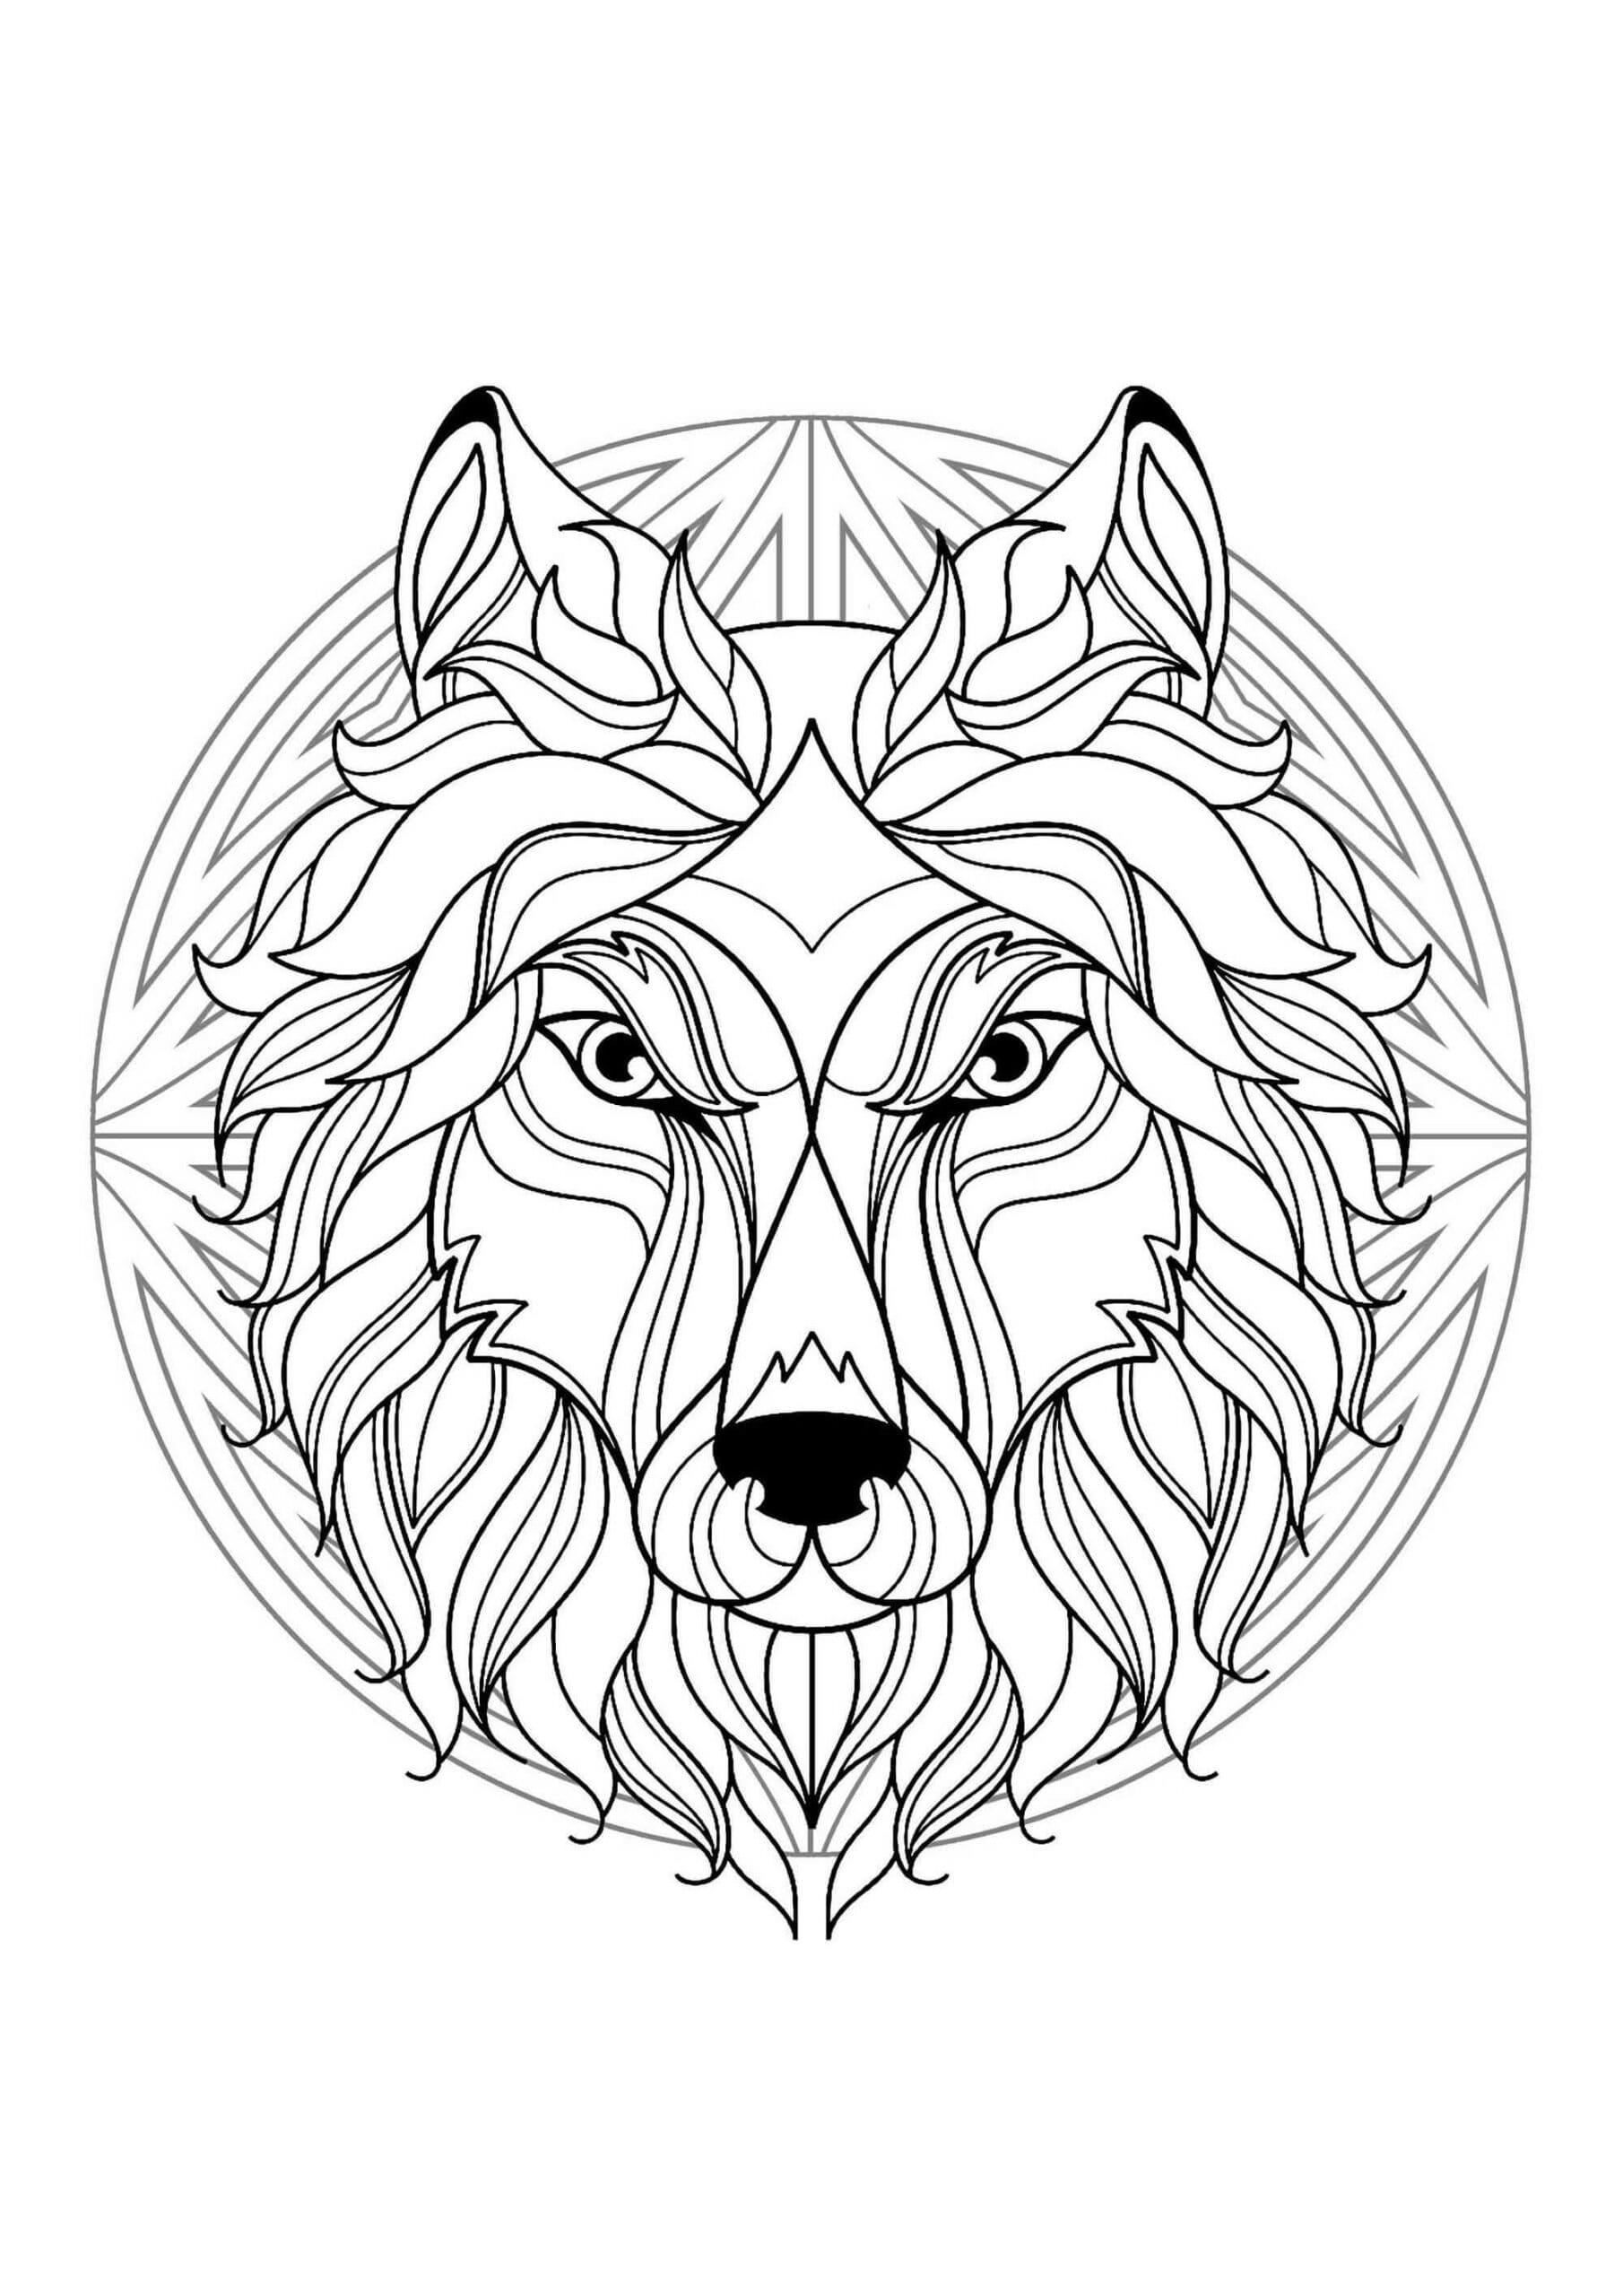 Mandala de Loup coloring page